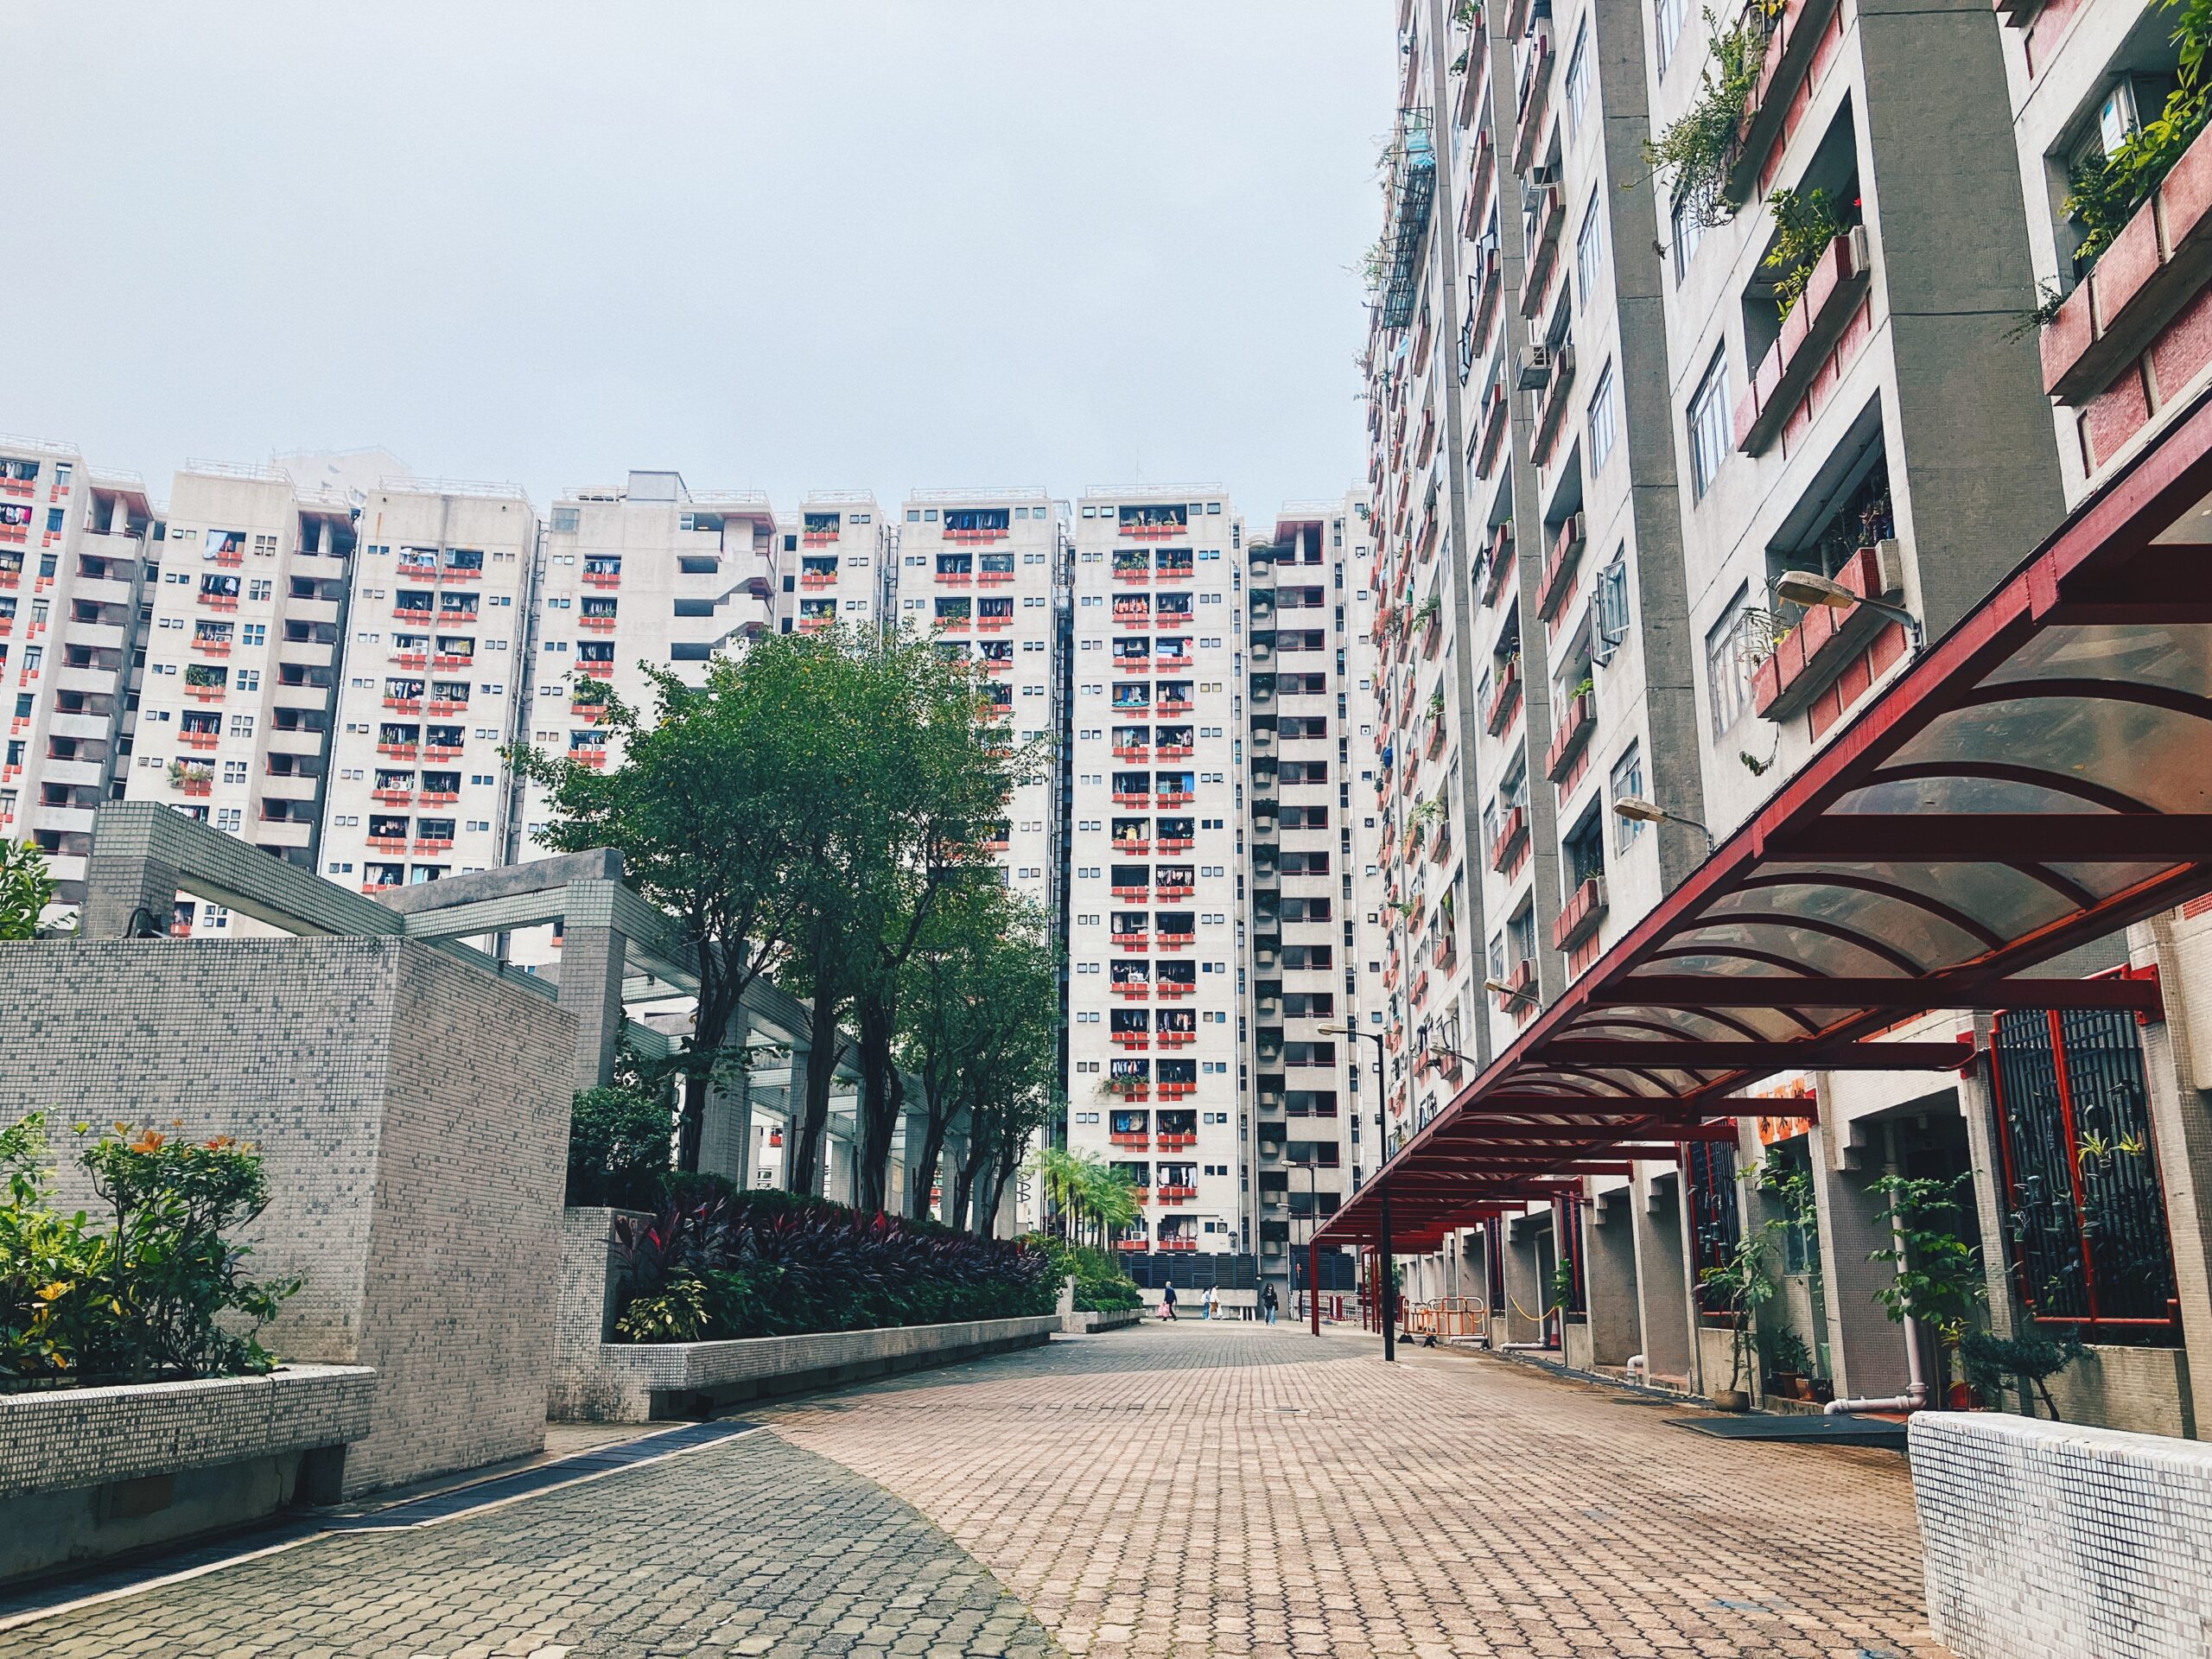 【香港公屋】紅磡家維邨 區內低調綠洲小社區